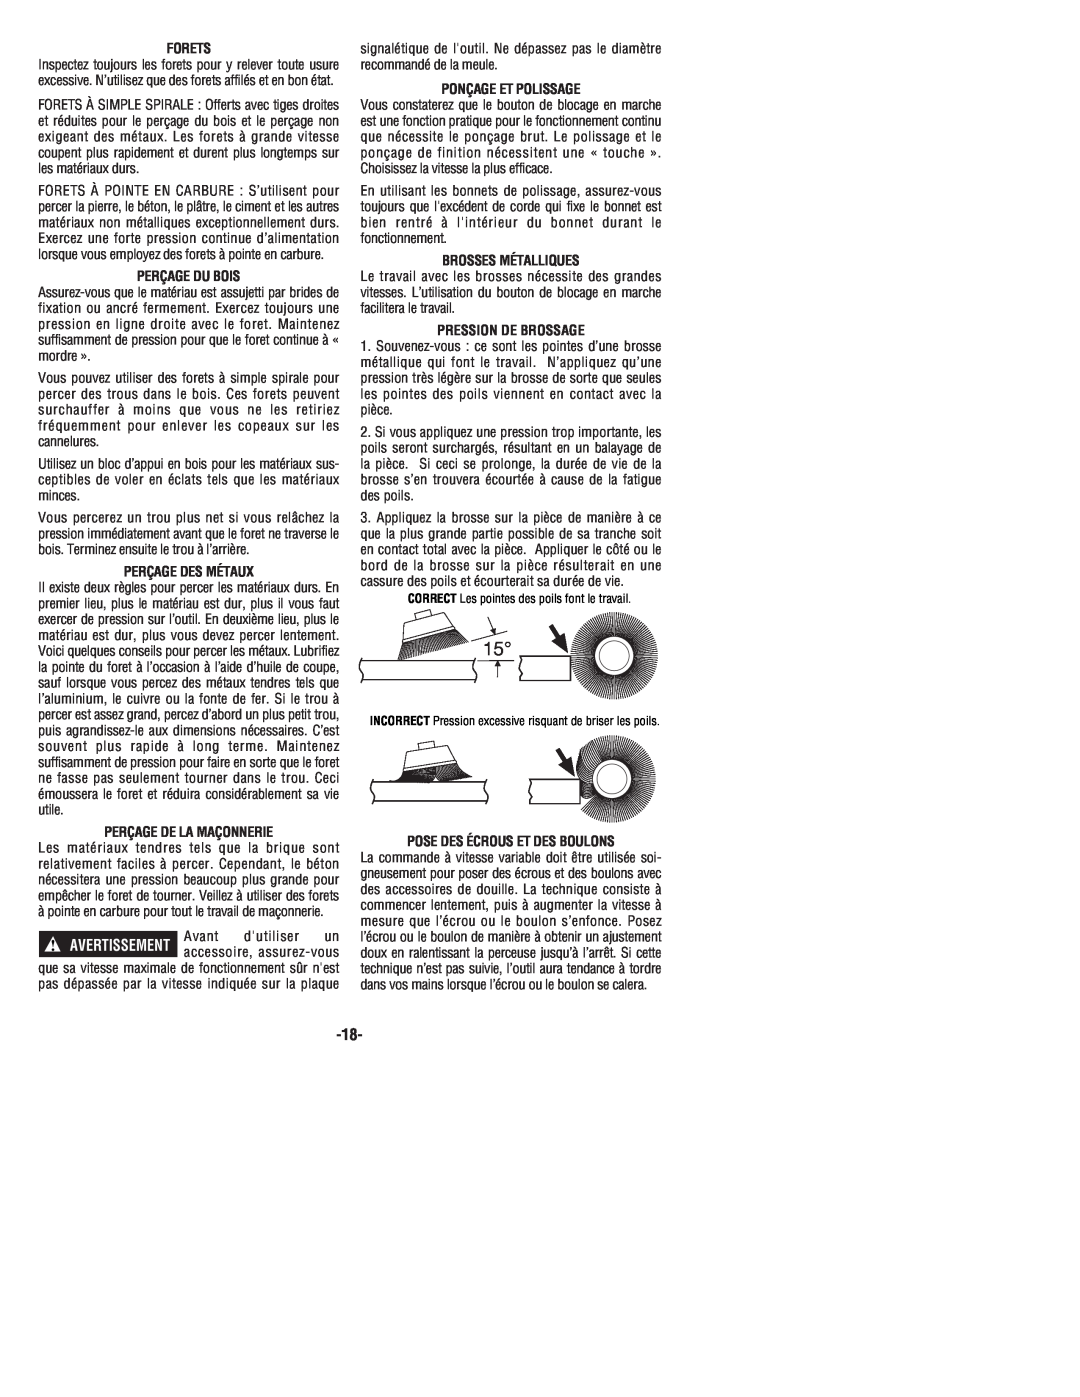 Bosch Power Tools 1199VSR manual Forets, Perçage Du Bois, Perçage Des Métaux, Perçage De La Maçonnerie, Avertissement 